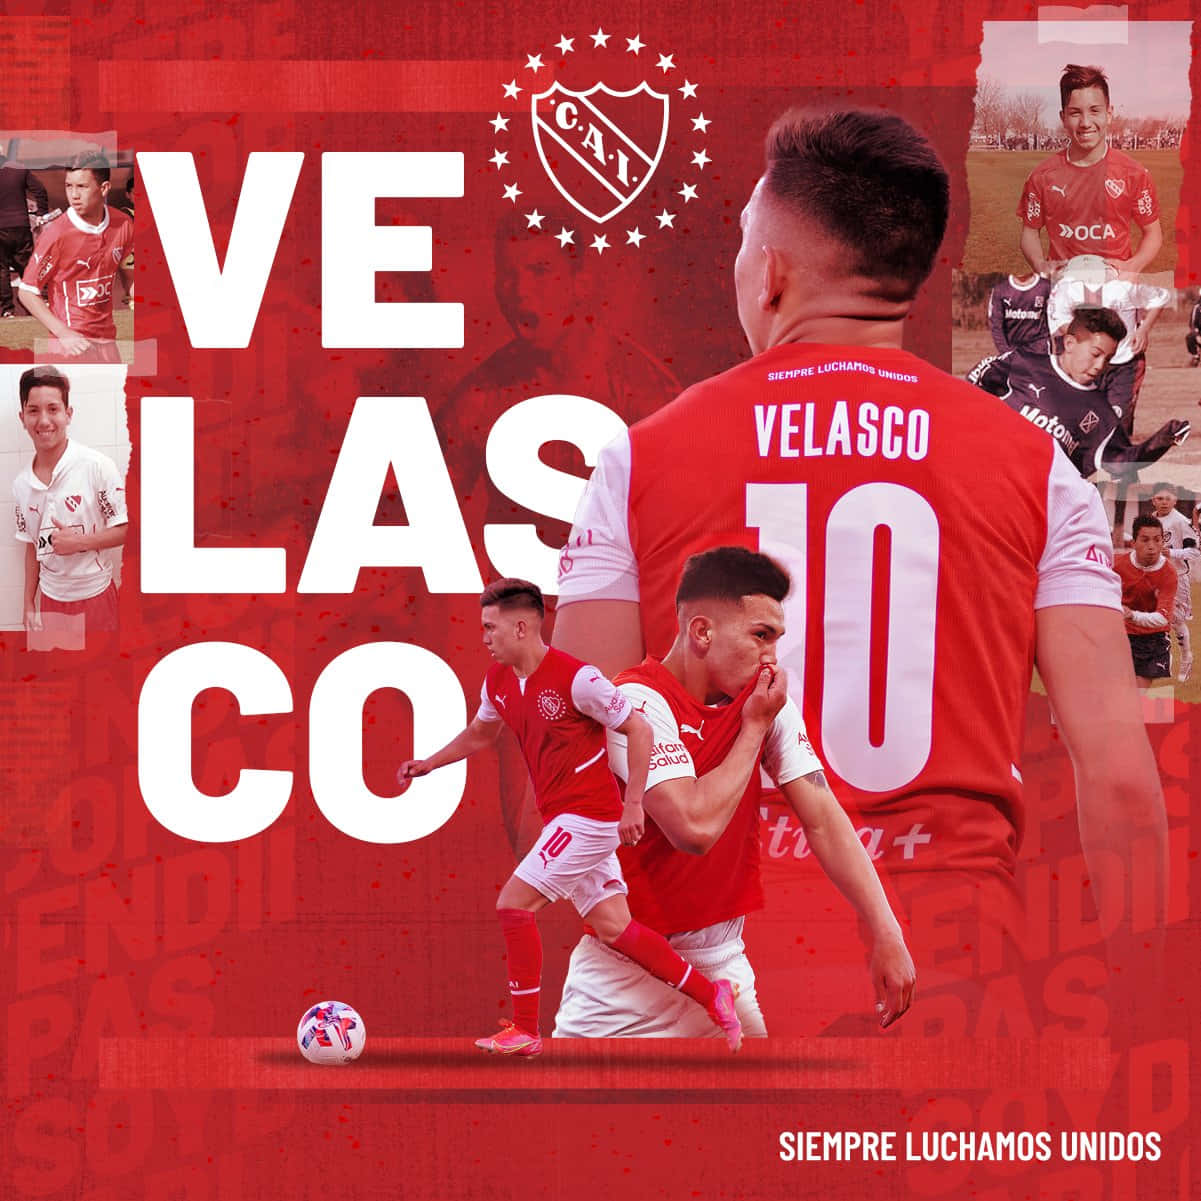 Alanvelasco Von Independiente Collage Wallpaper